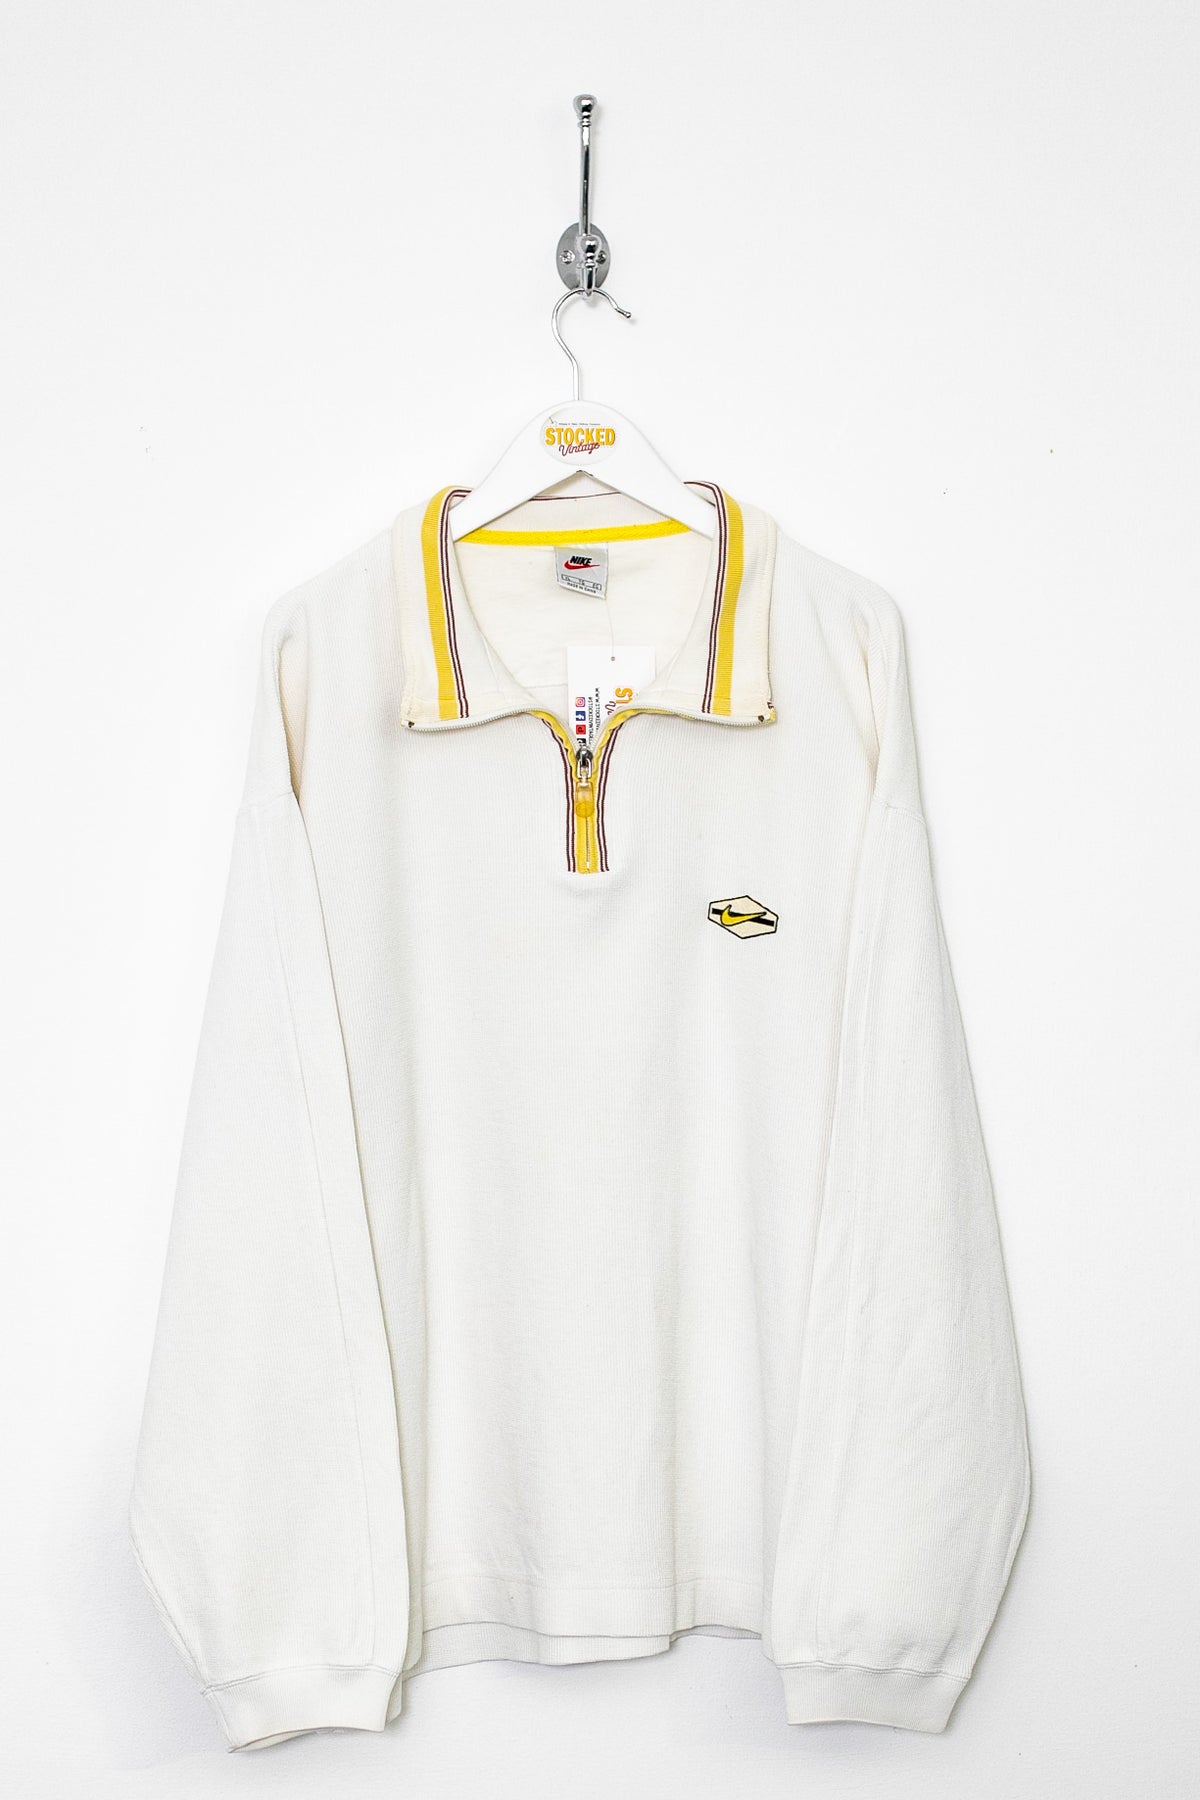 90s Nike 1/4 Zip Sweatshirt (L)